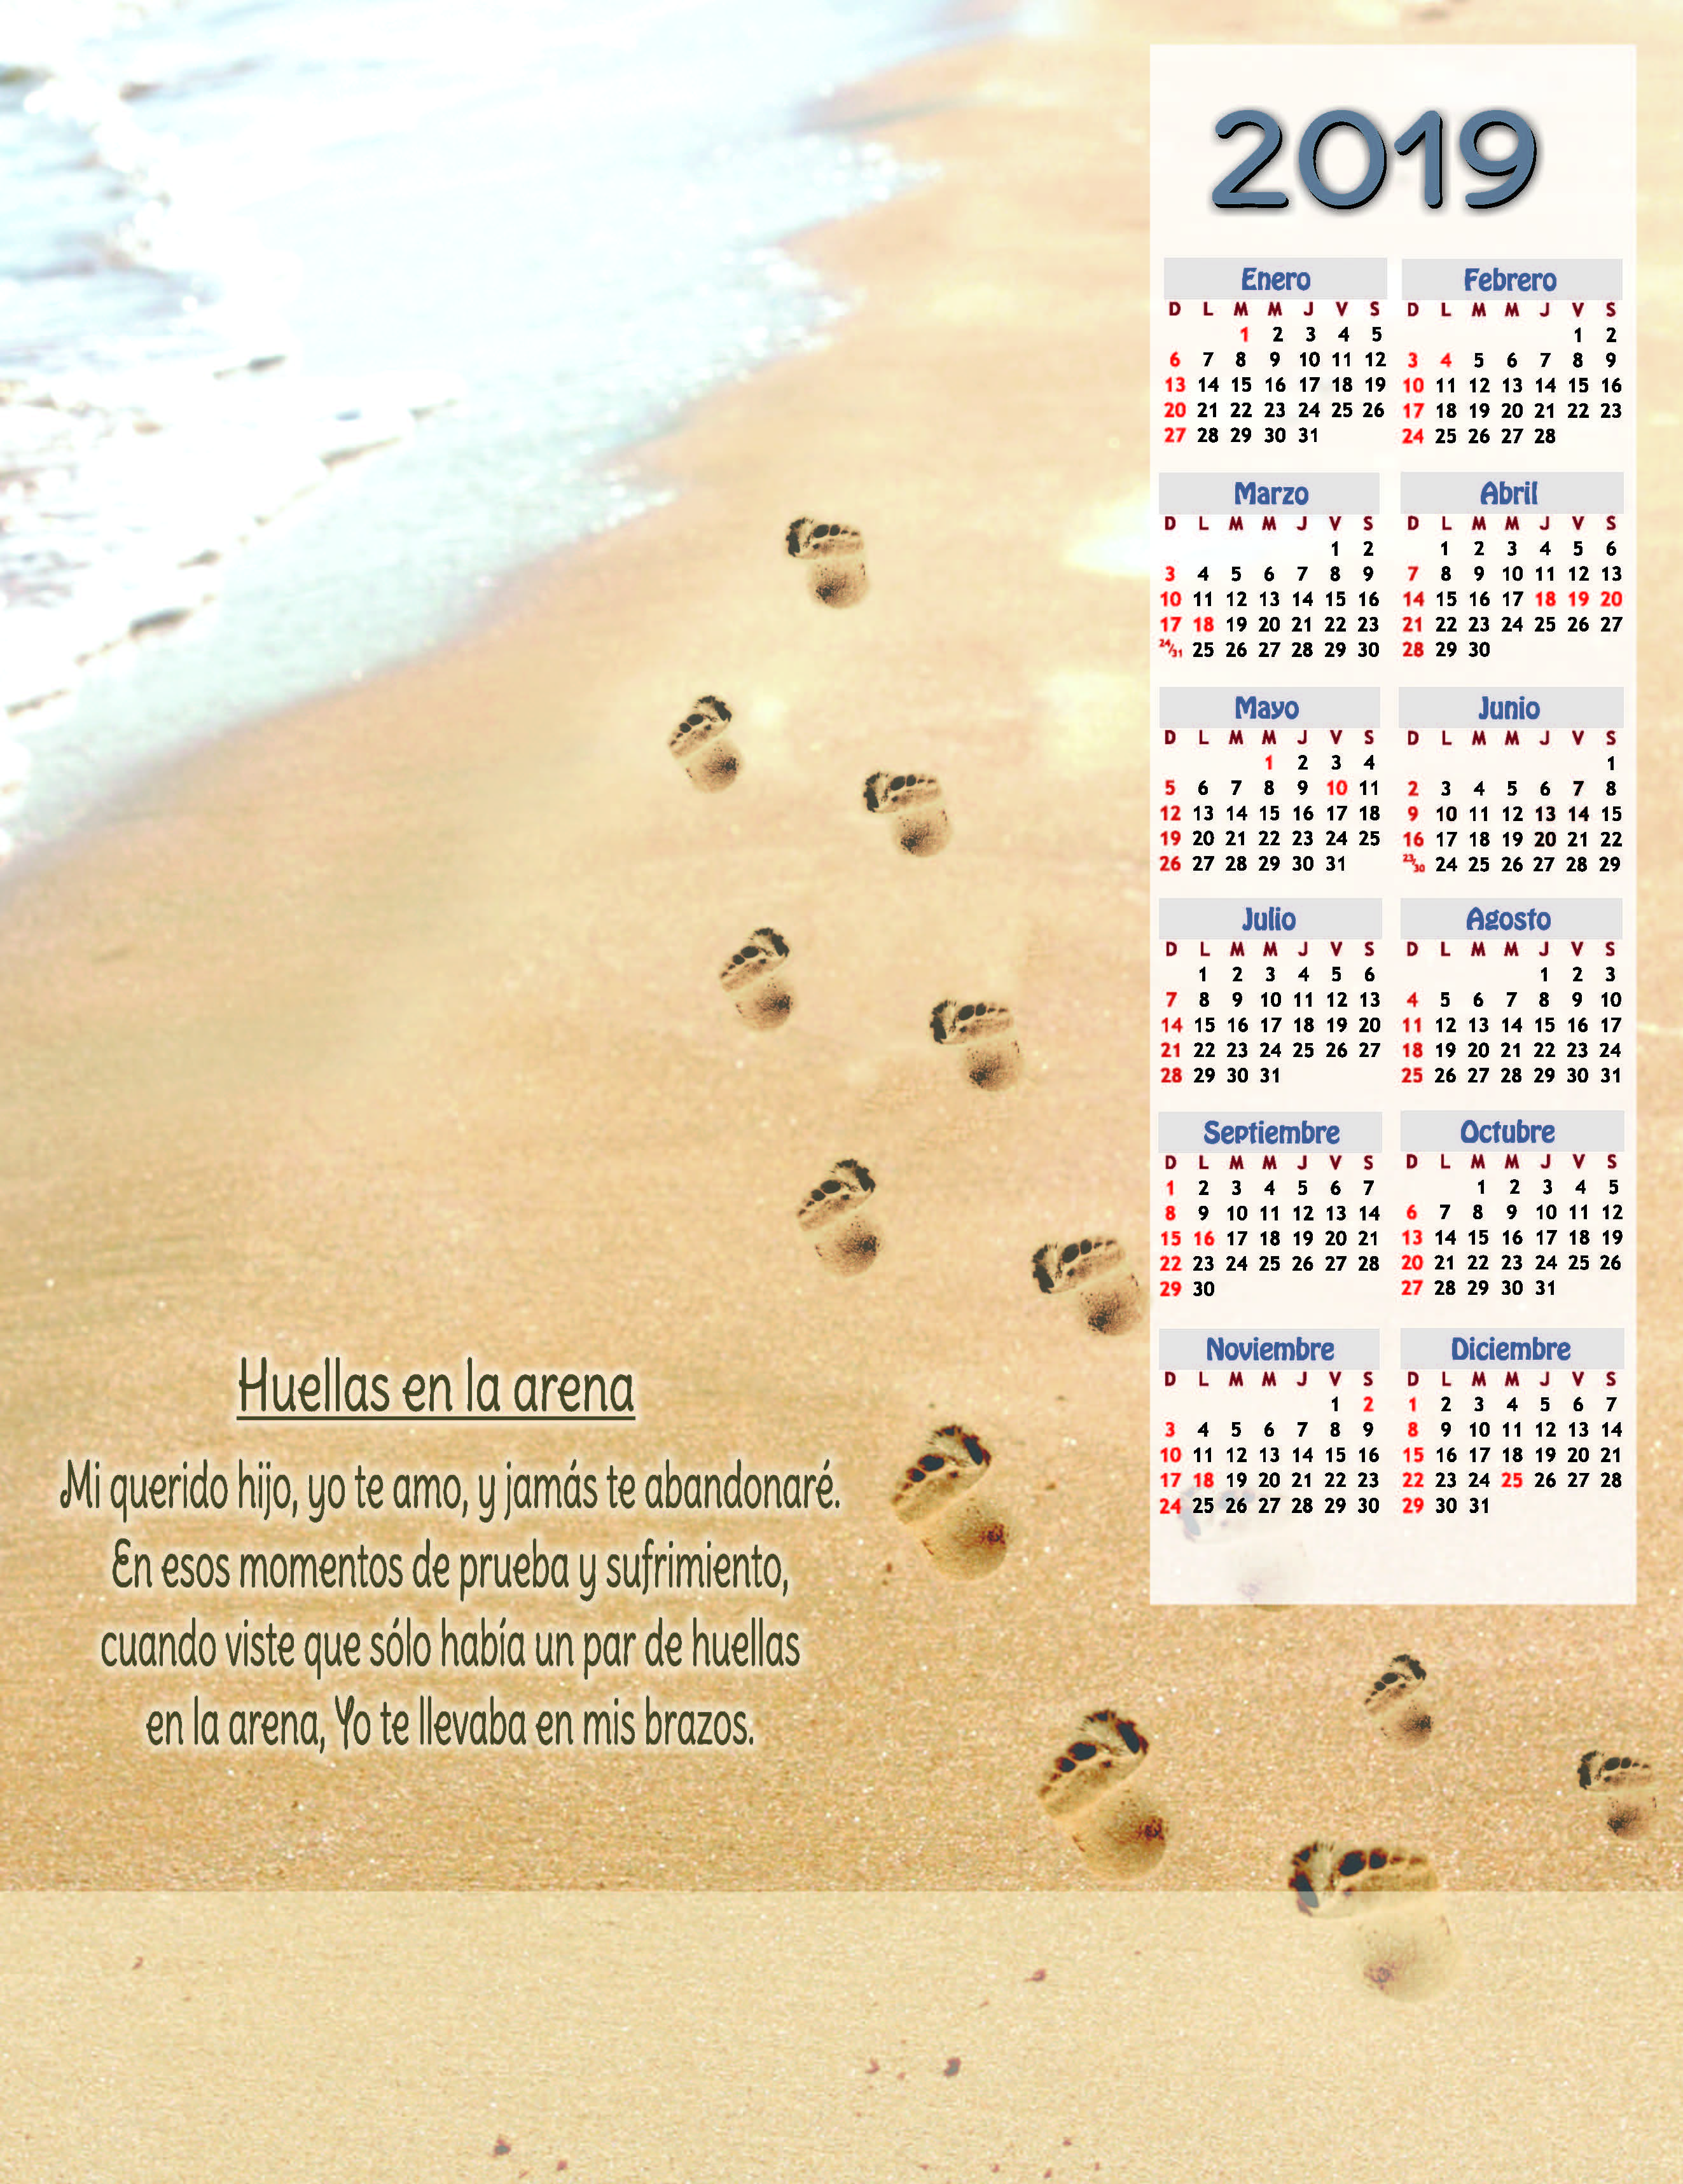 2019 Calendario - Huellas